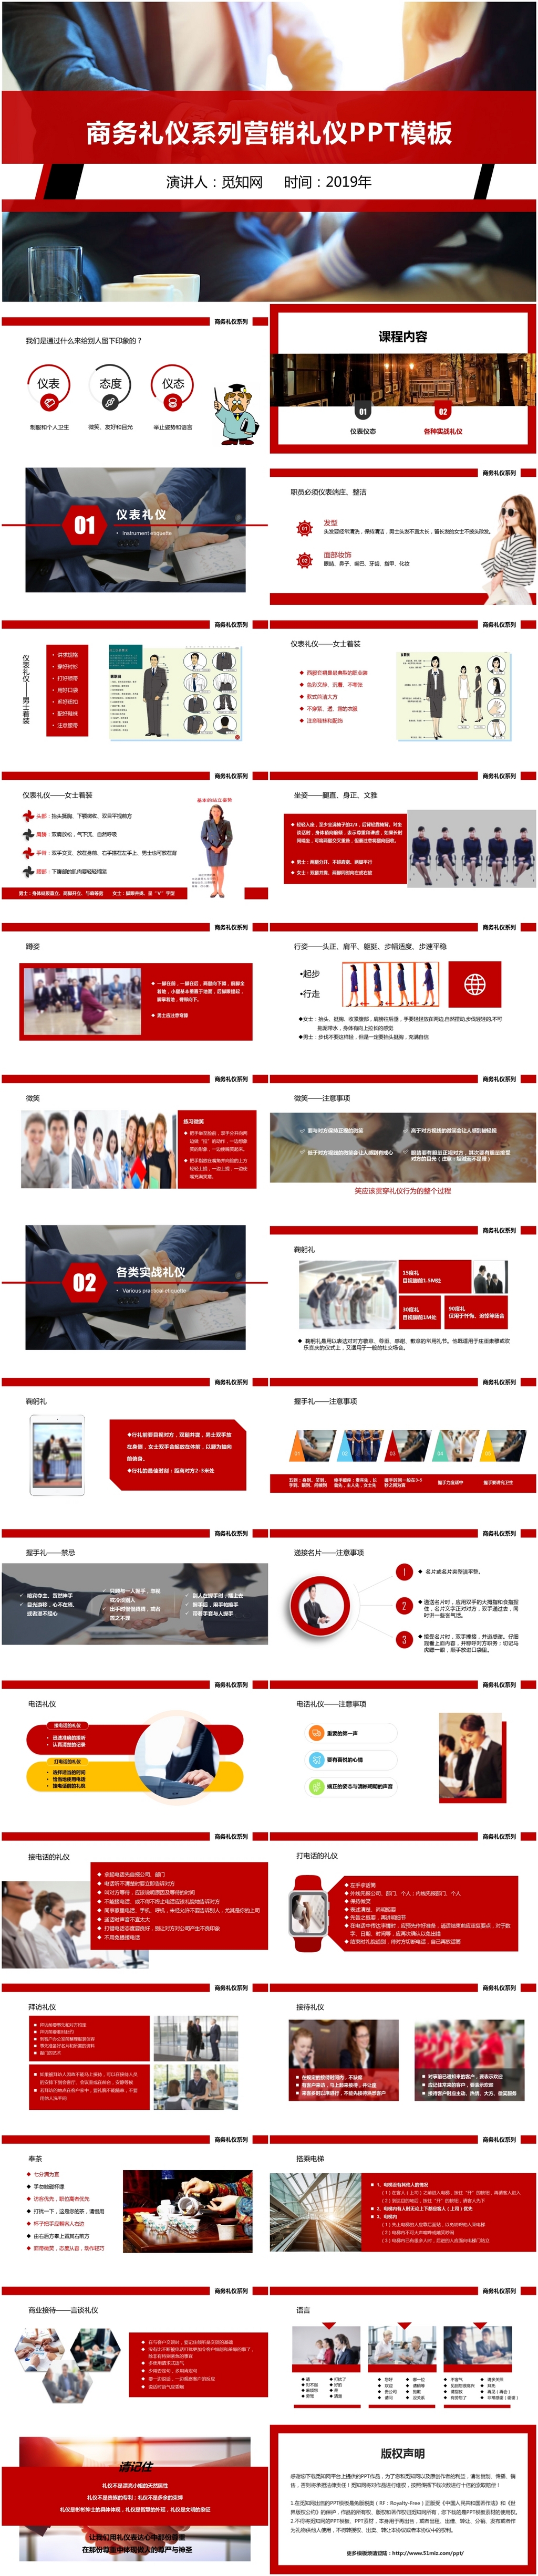 红色简约企业商务礼仪系列之营销礼仪培训PPT模板